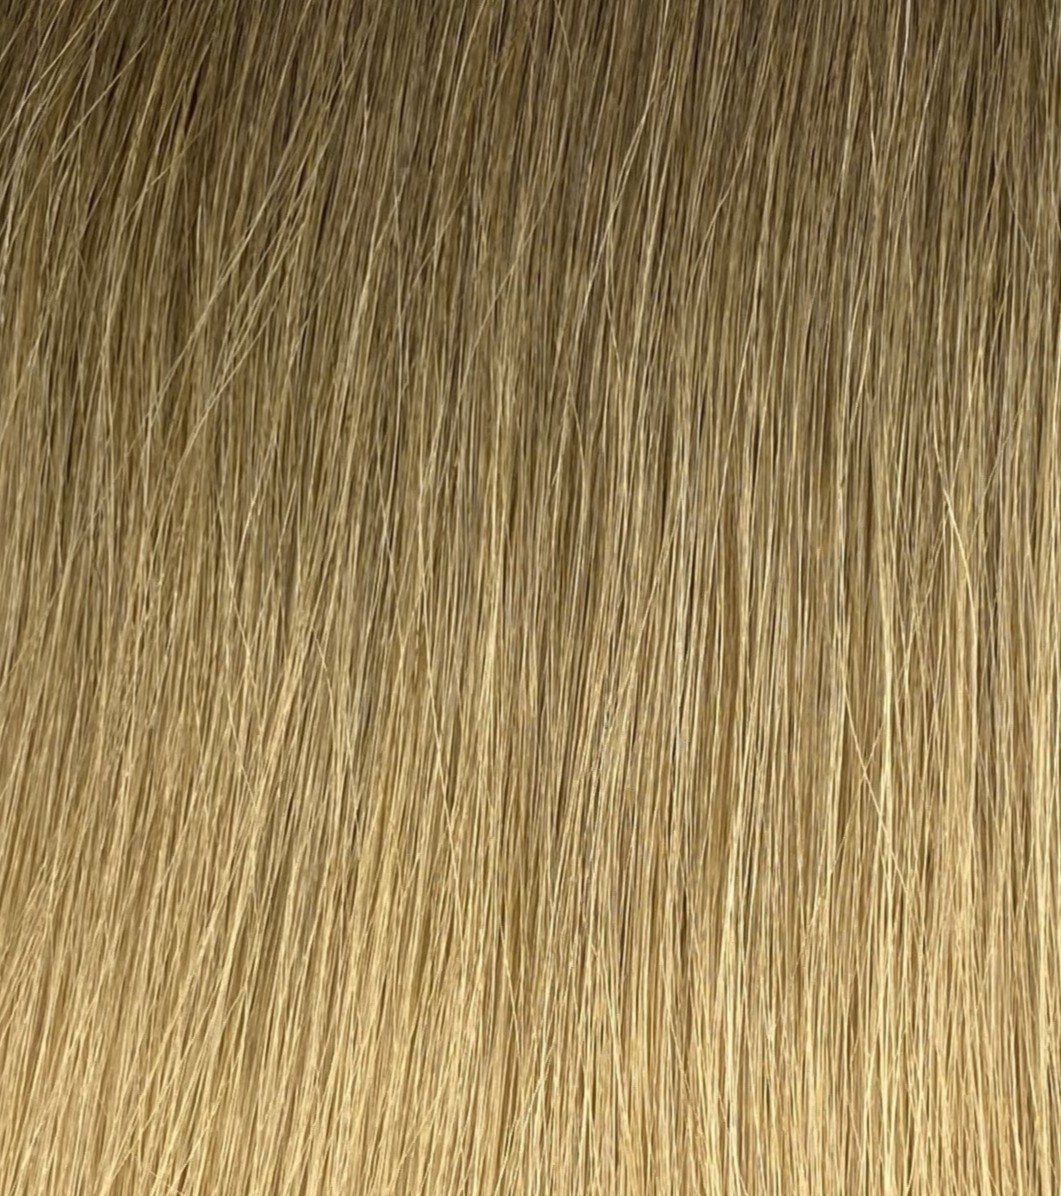 Single Weft Ombre #8 & DB4 - 20 Inches - Dark Blonde into Dark Golden Blonde - 60 Grams